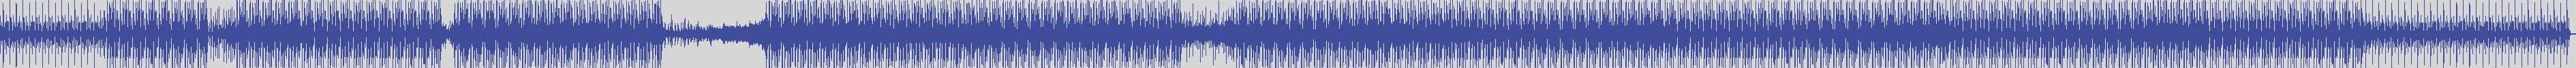 atomic_recordings [AR013] Paul Cutiè - Ass Bag [Original Mix] audio wave form